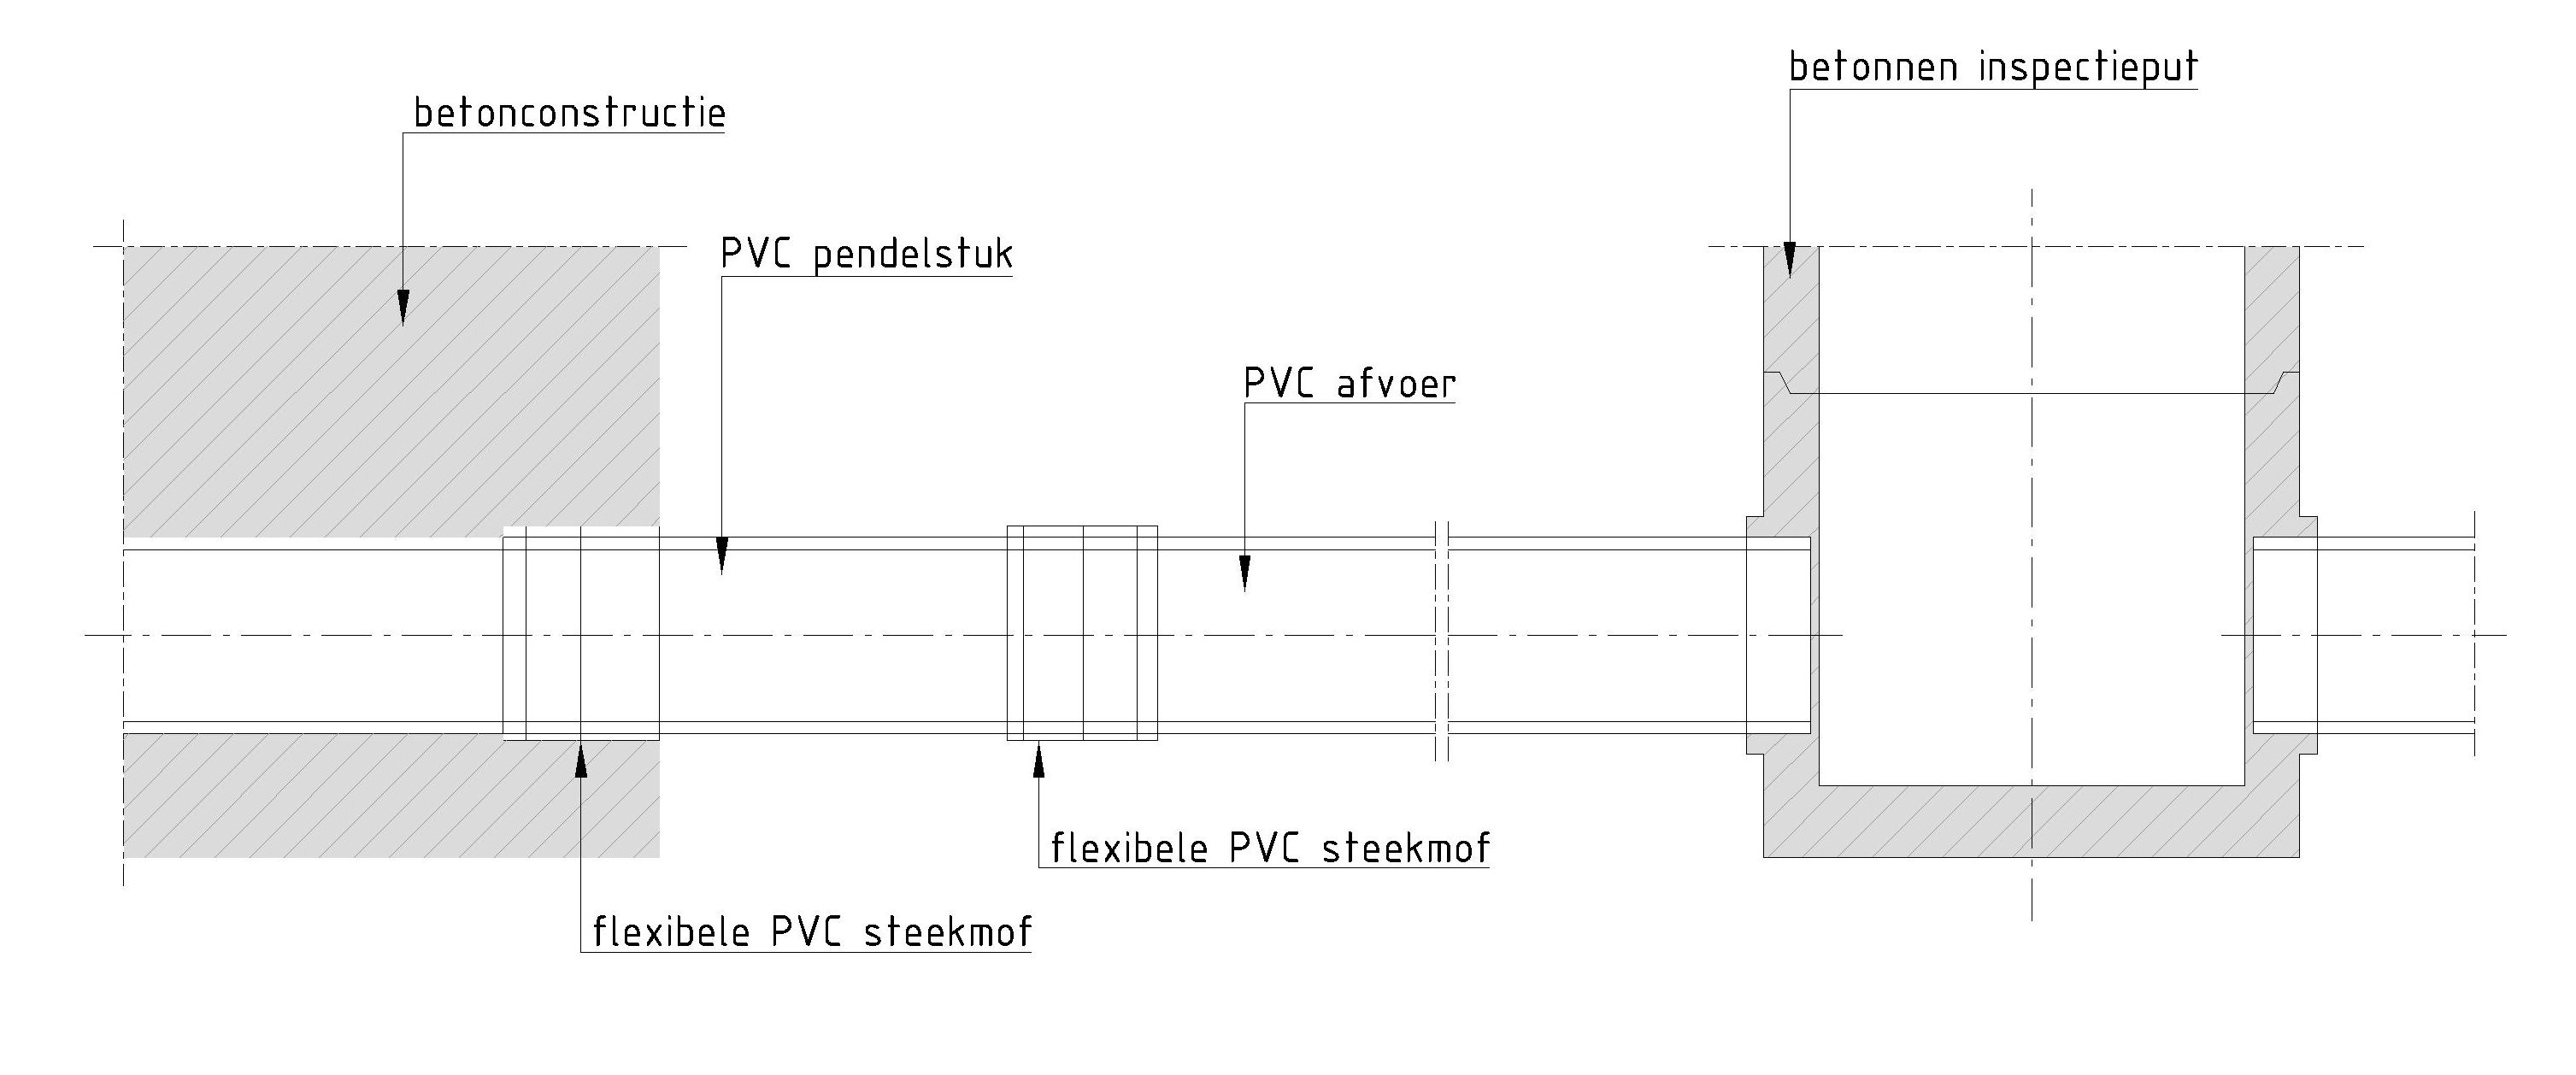 391.1 – Aansluiting inspectieput-betonconstructie